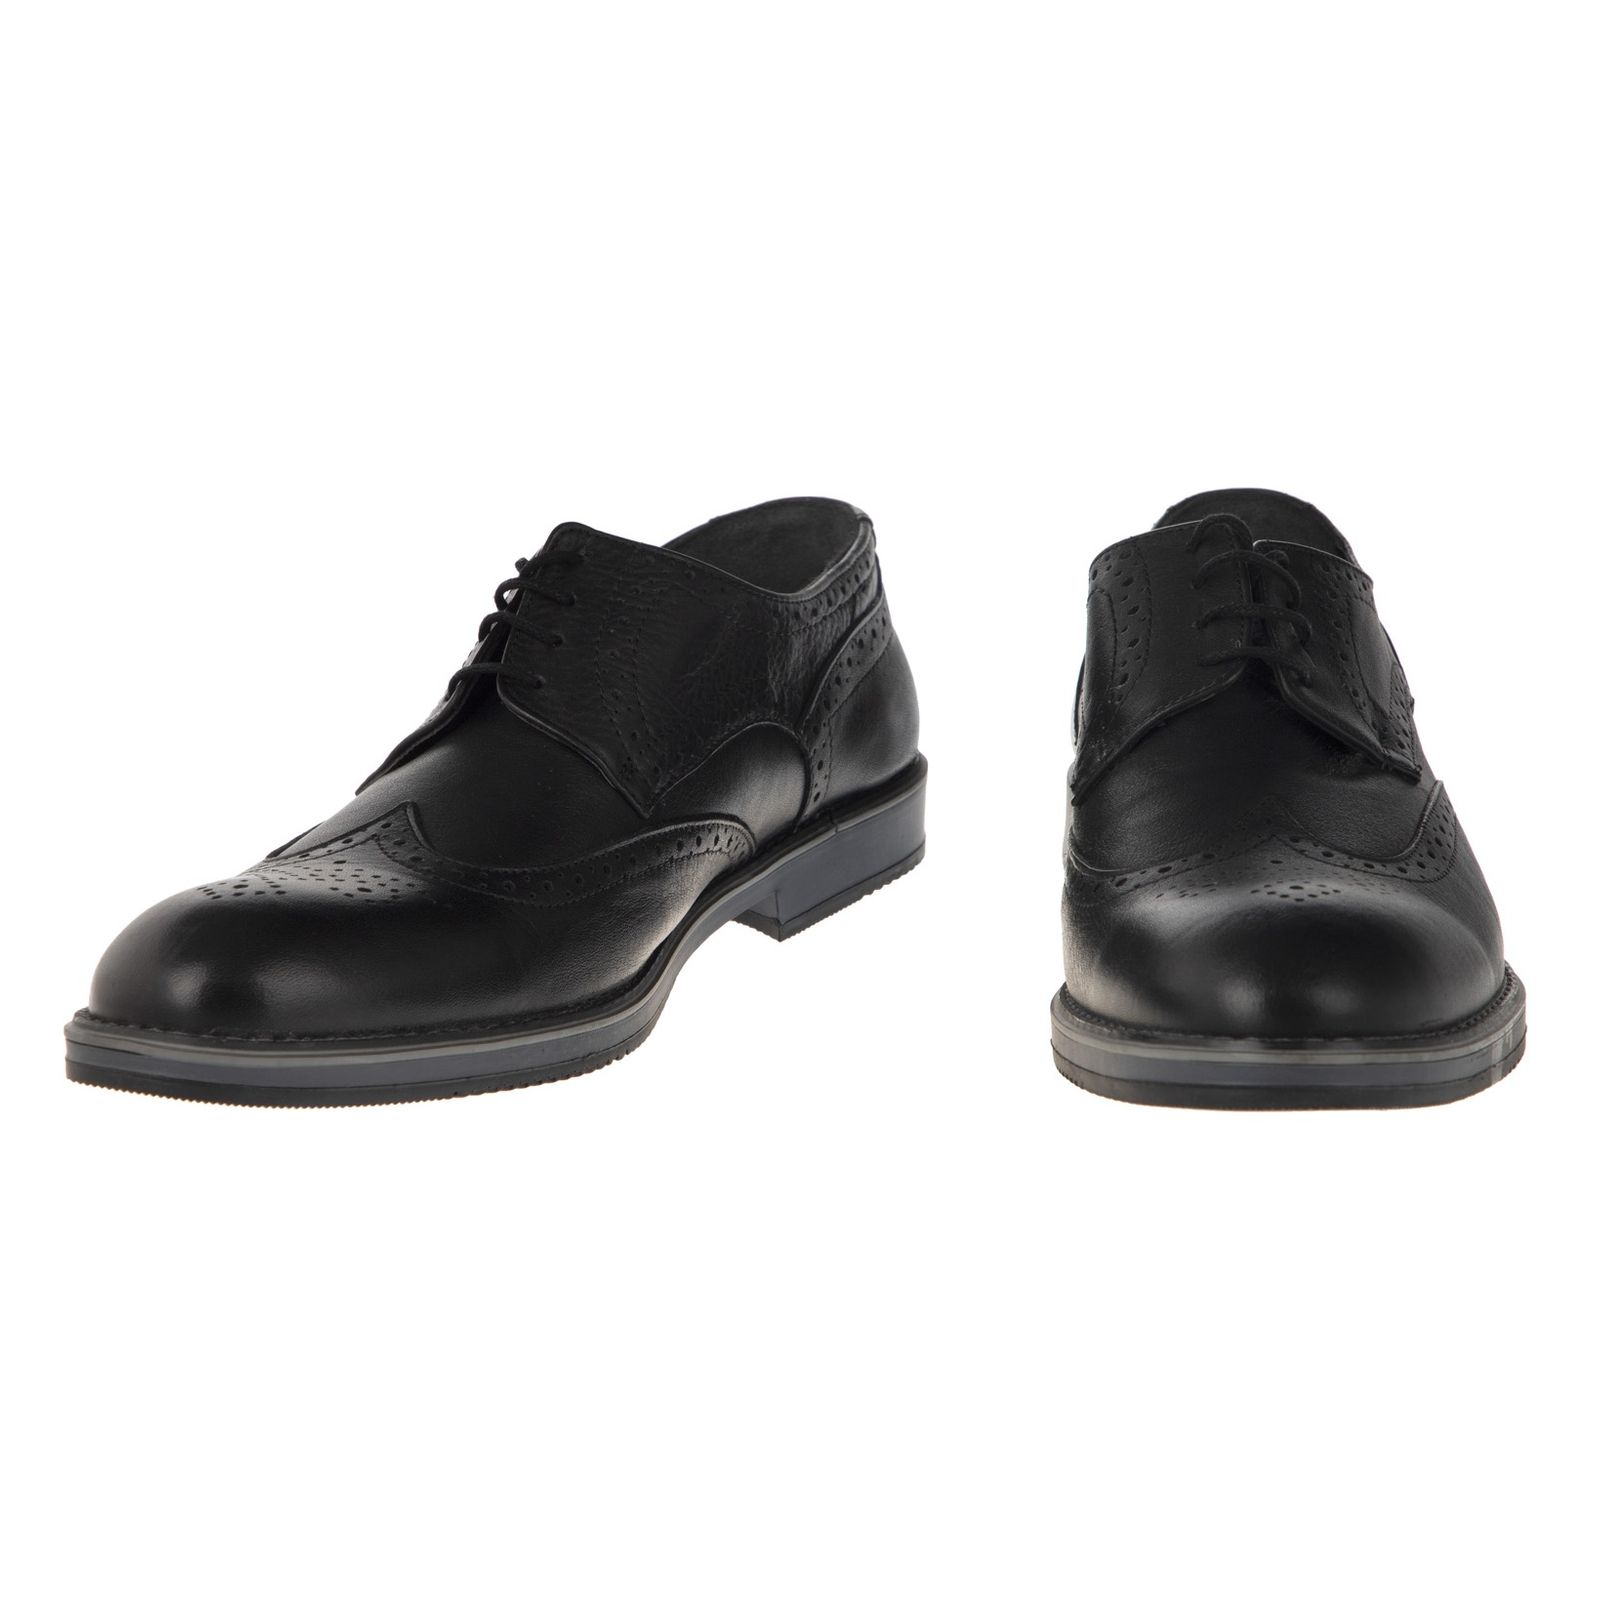 کفش مردانه گاراموند مدل 100316834-101 - مشکی - 4